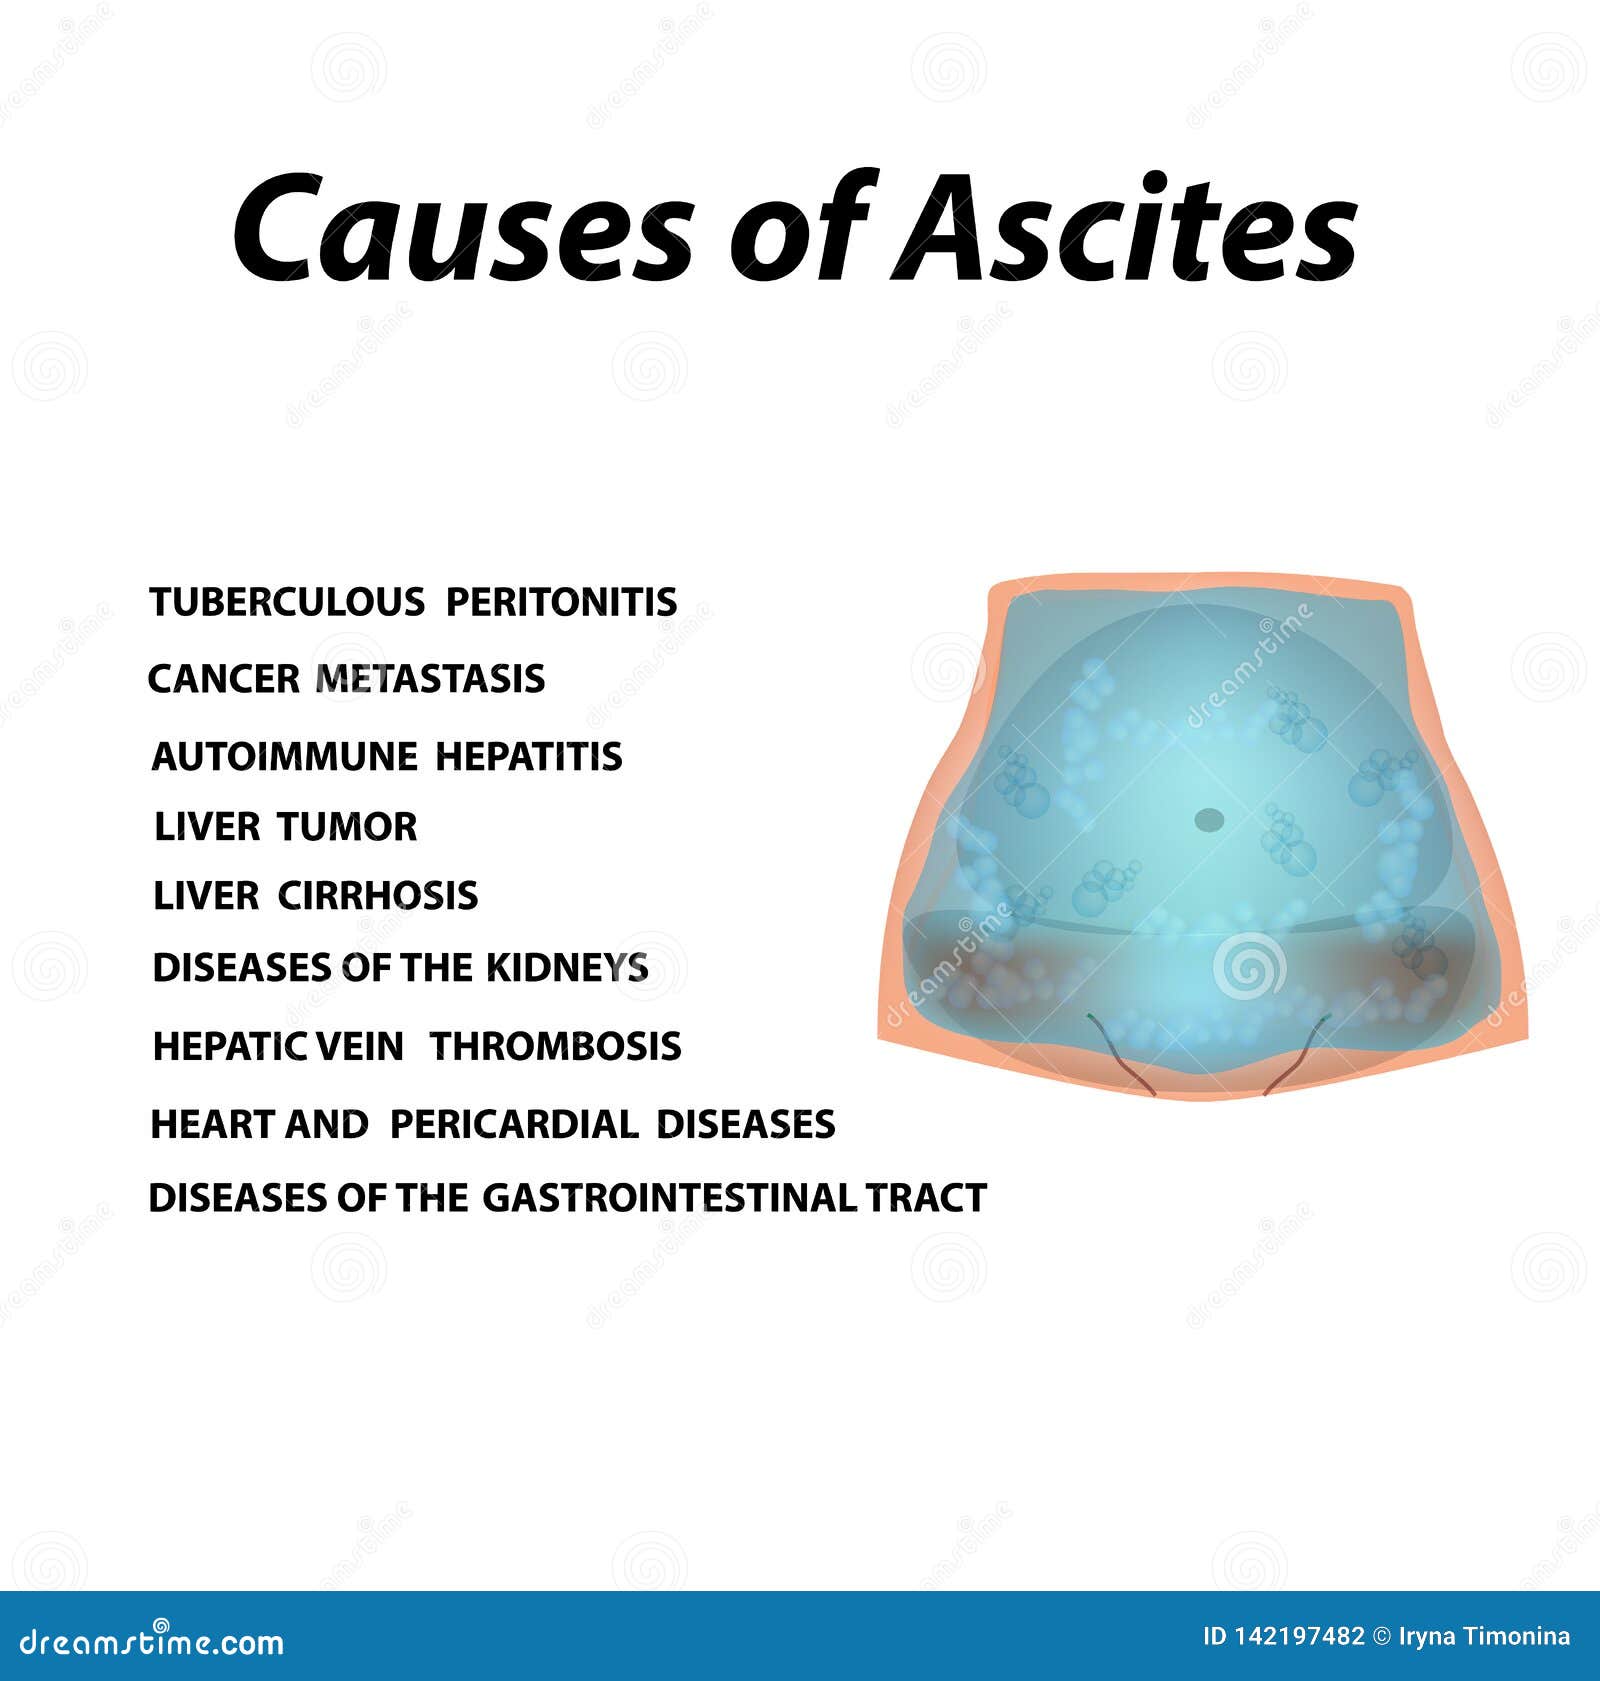 Ascites